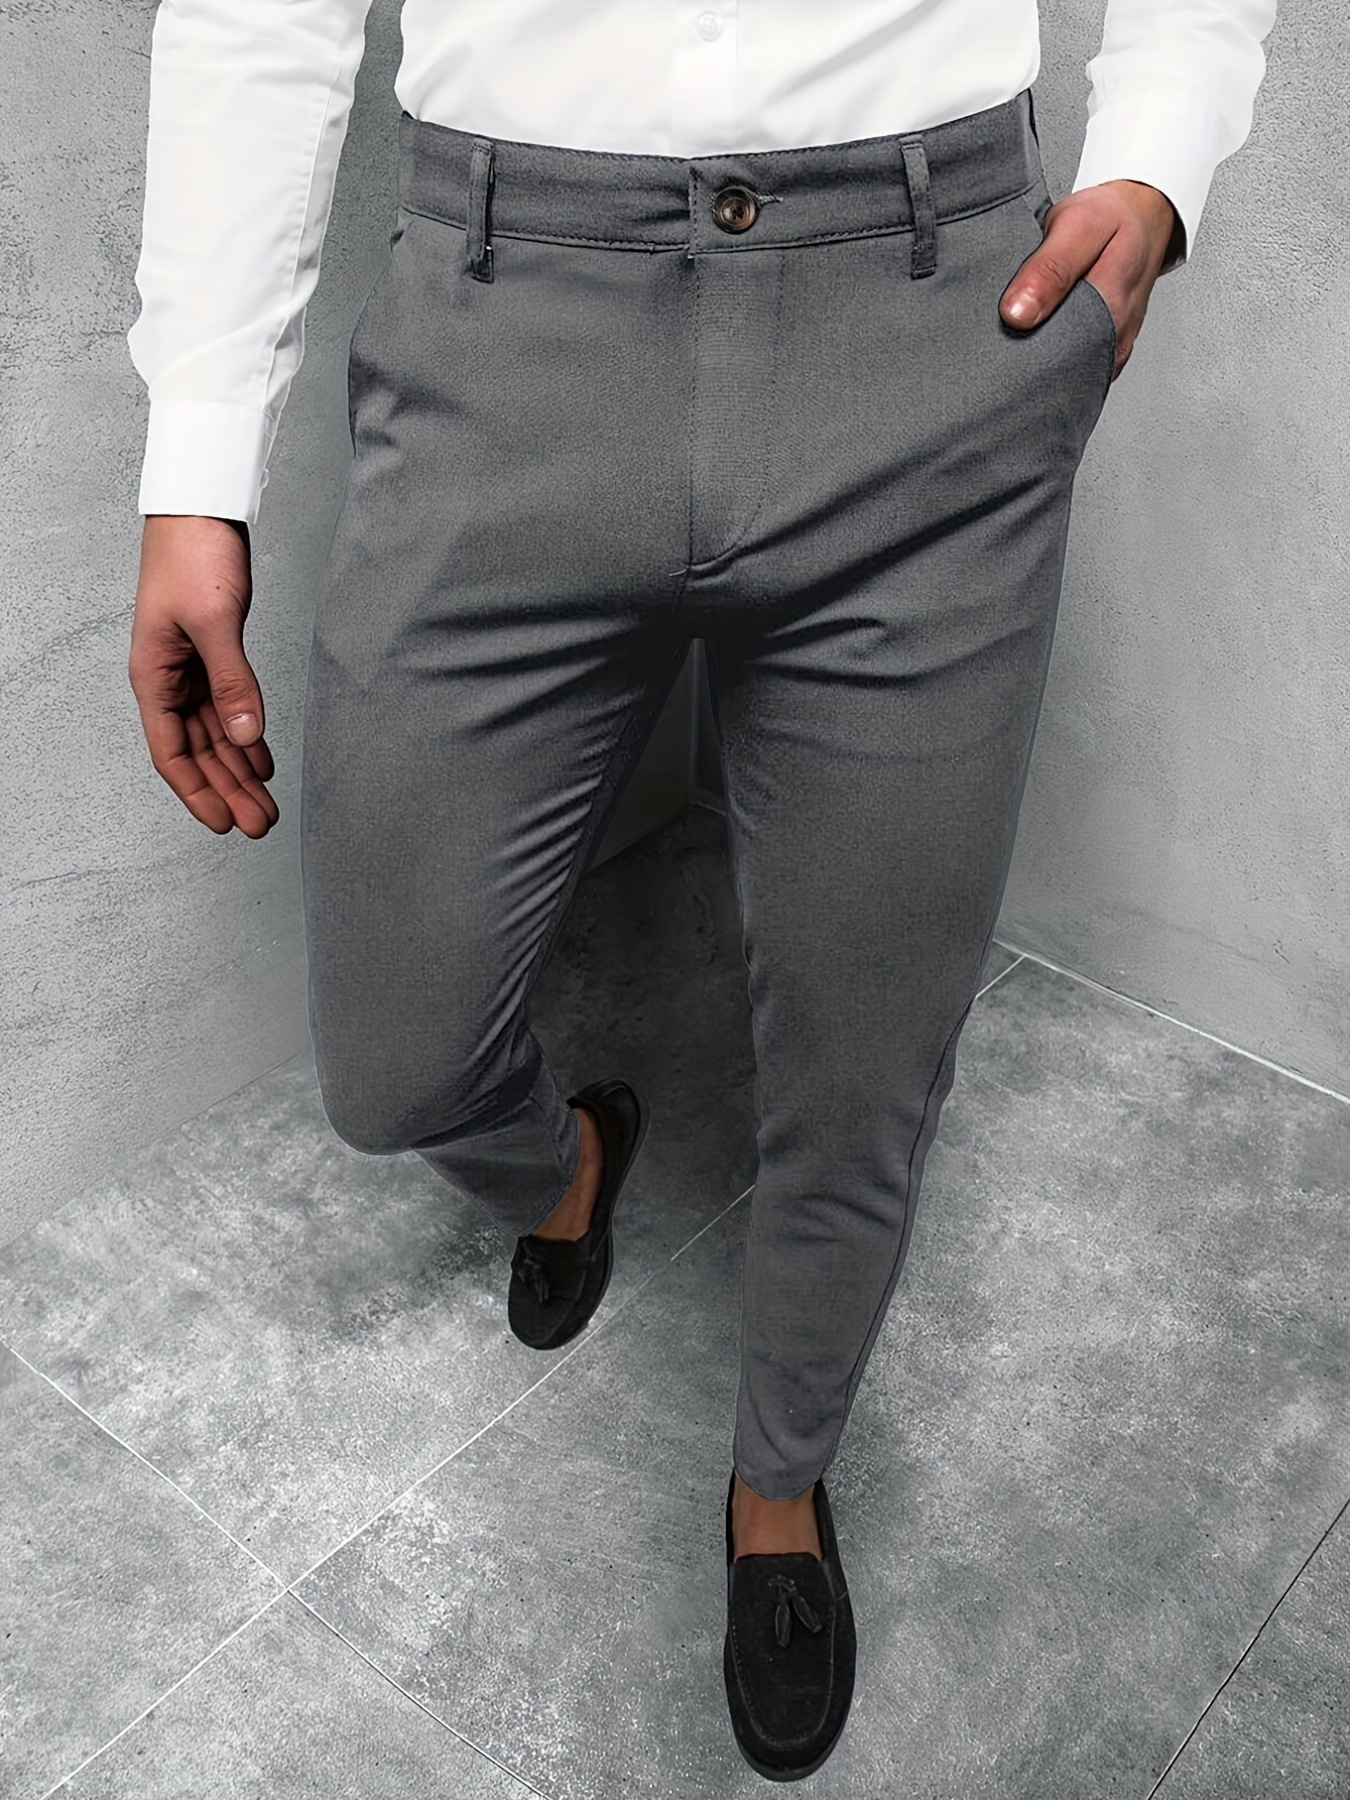 Men's Slim Fit Formal Trousers, Formal Pants for Men